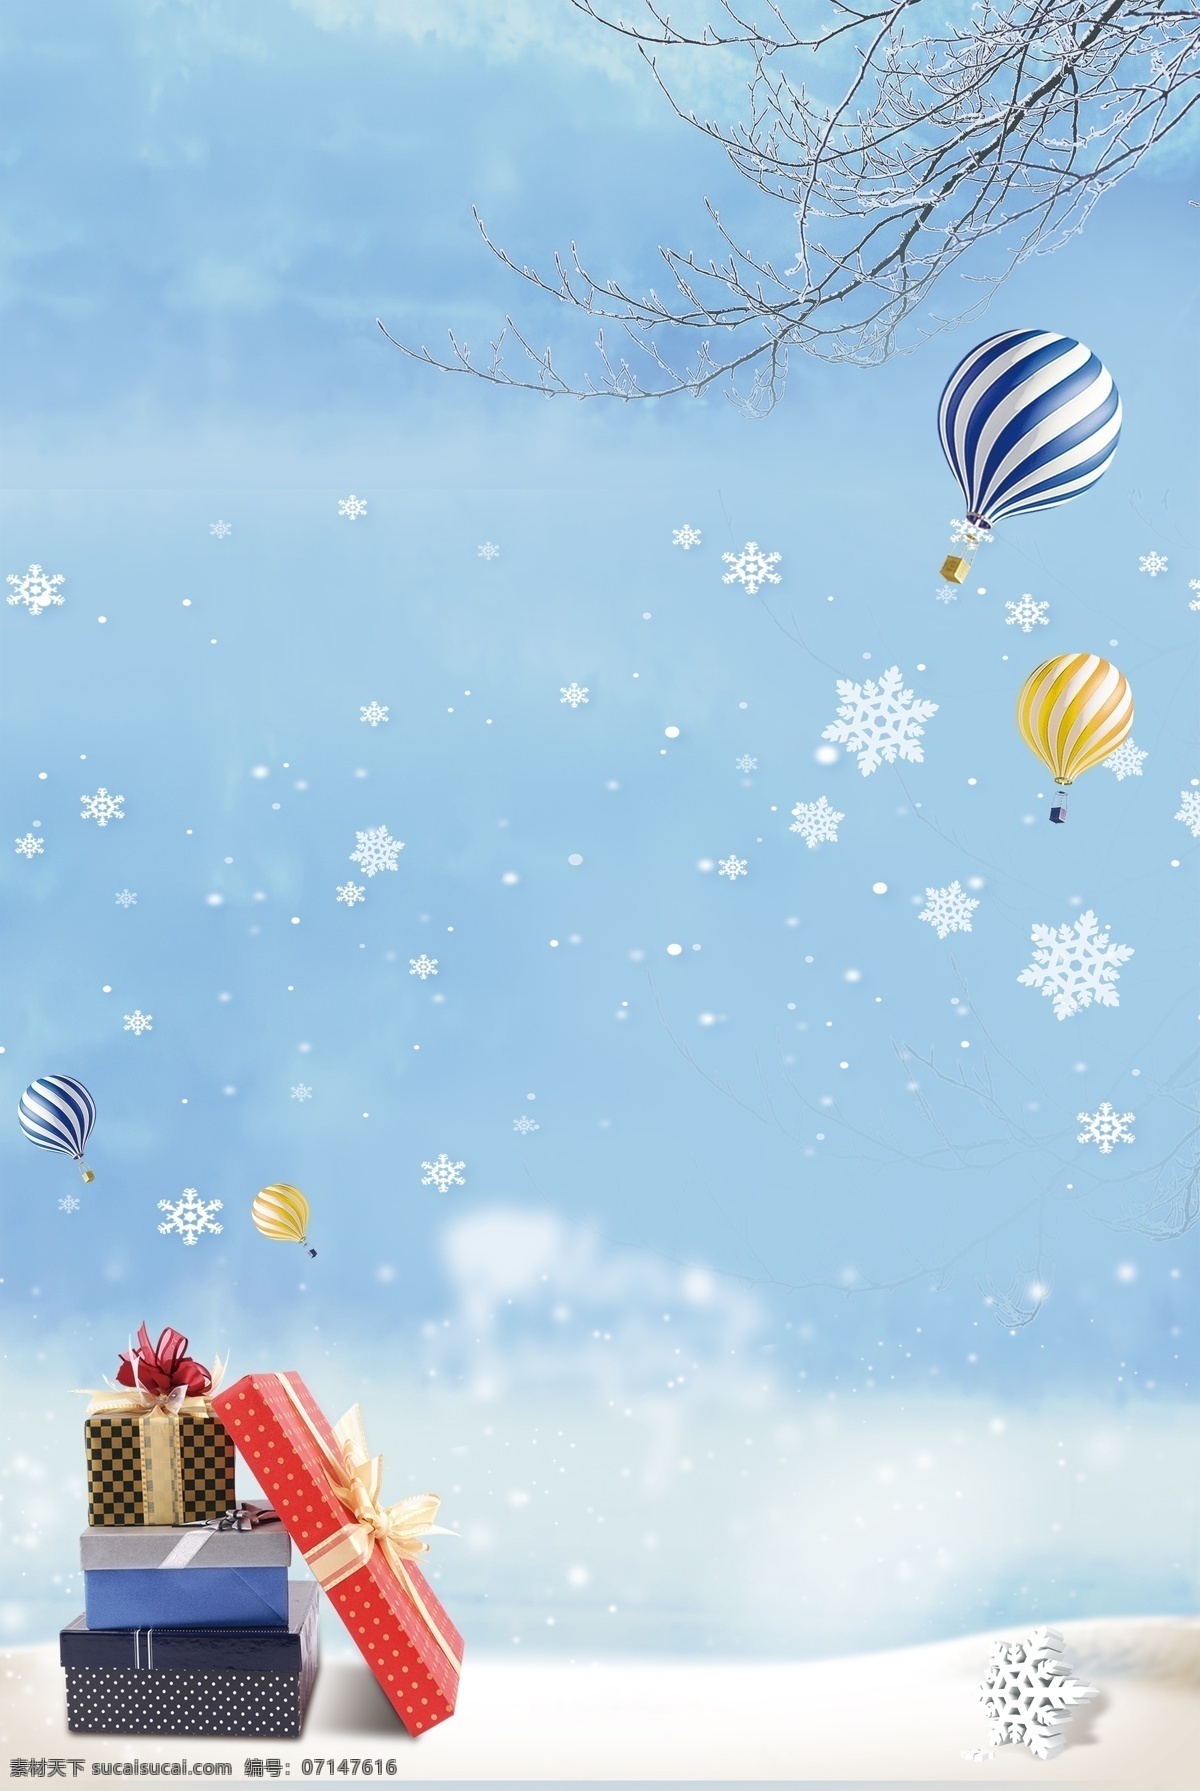 卡通 雪人 冬天 冬季 节气 大雪 广告 背景 雪景 房子 雪花 手绘 下雪 24节气 秋冬 树枝 松鼠 滑雪